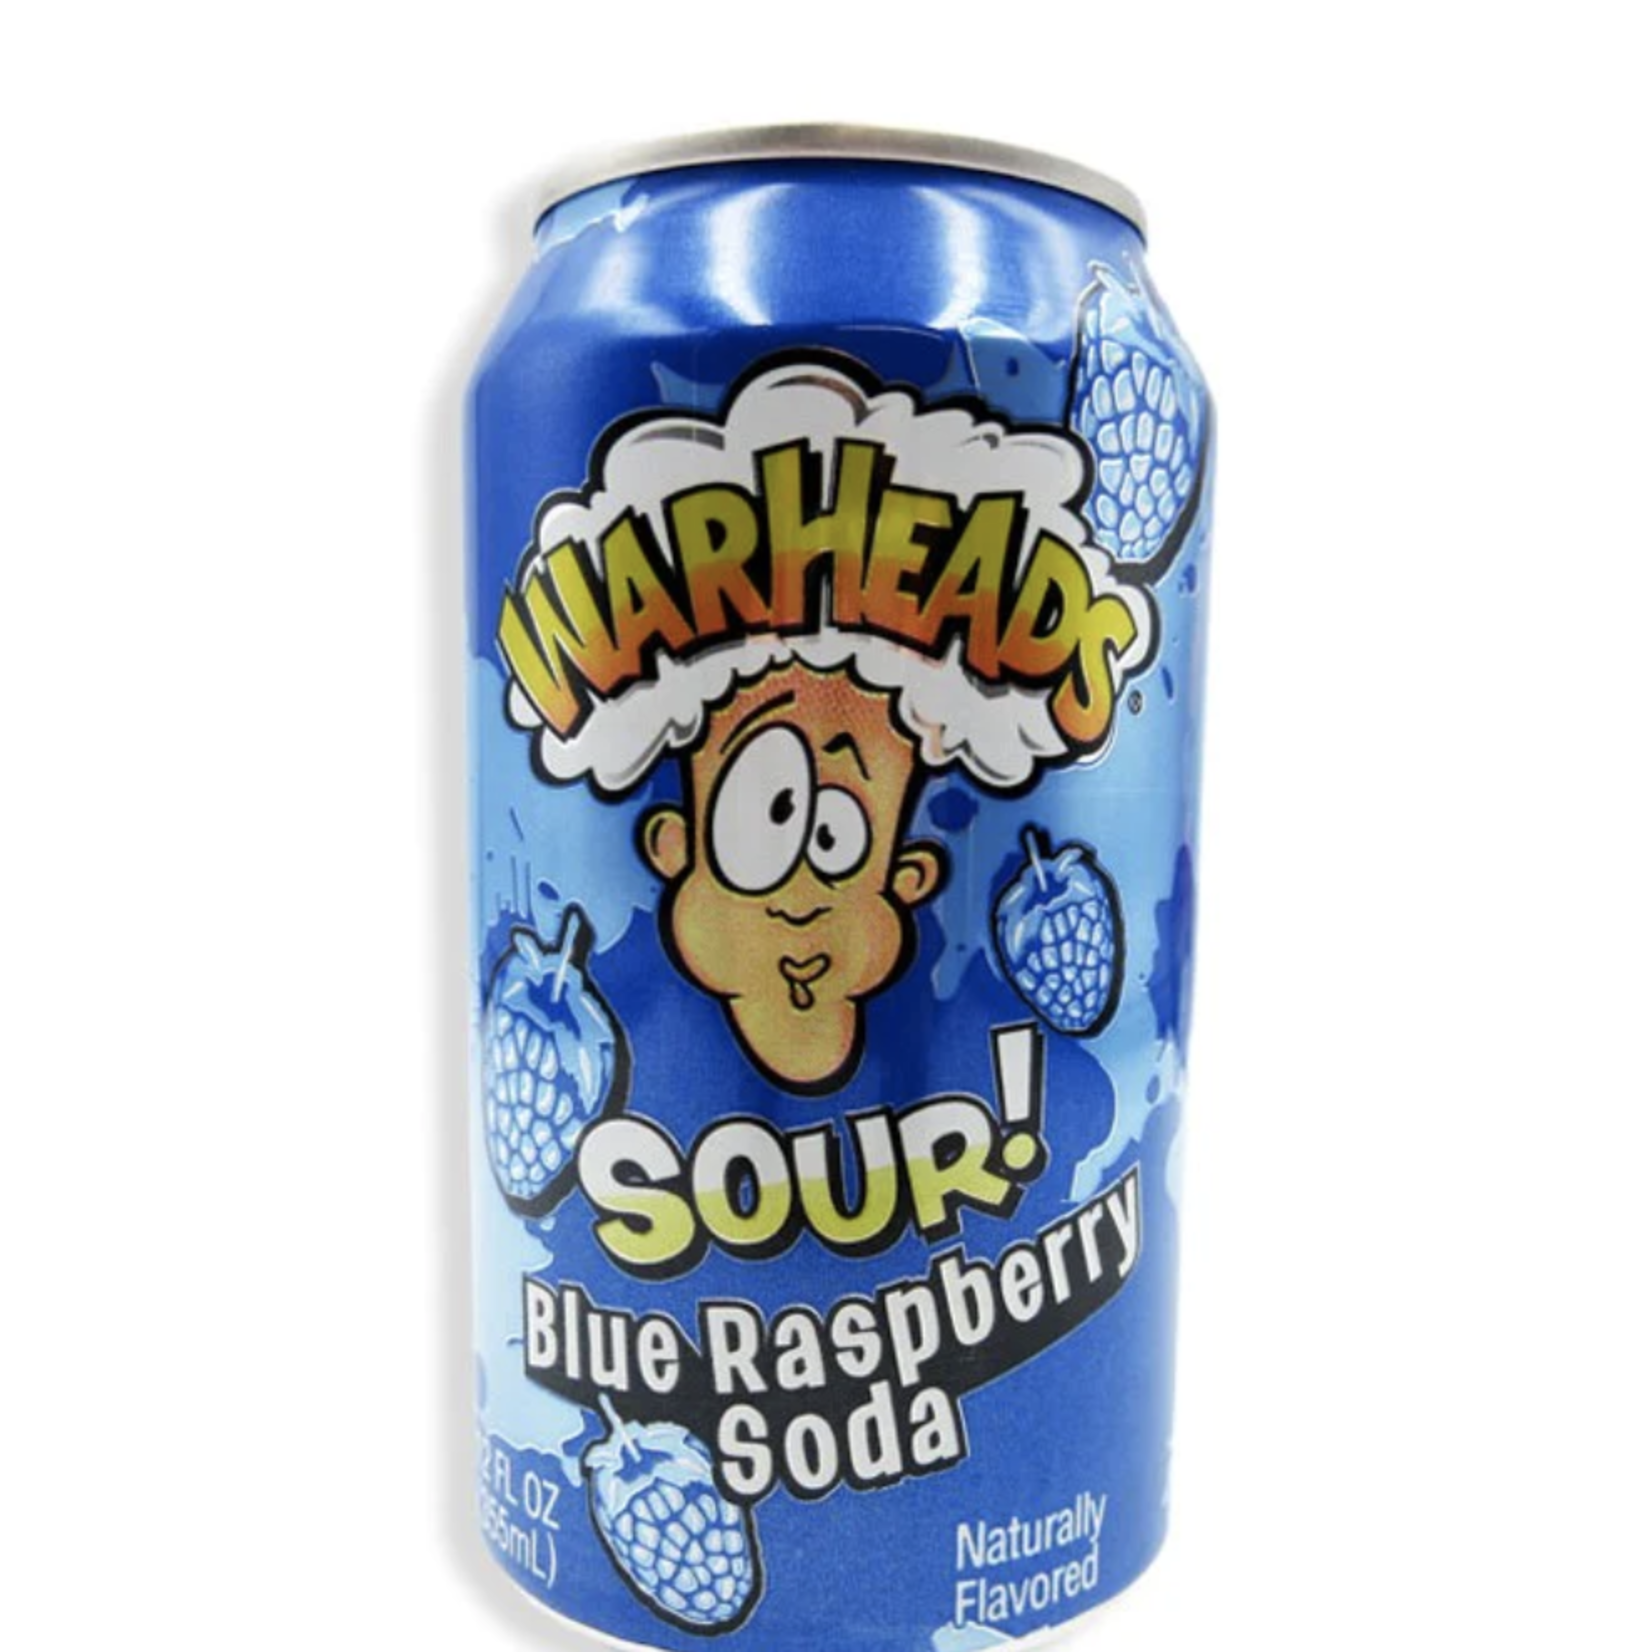 Grandpa Joes Warheads Soda - Blue Raspberry